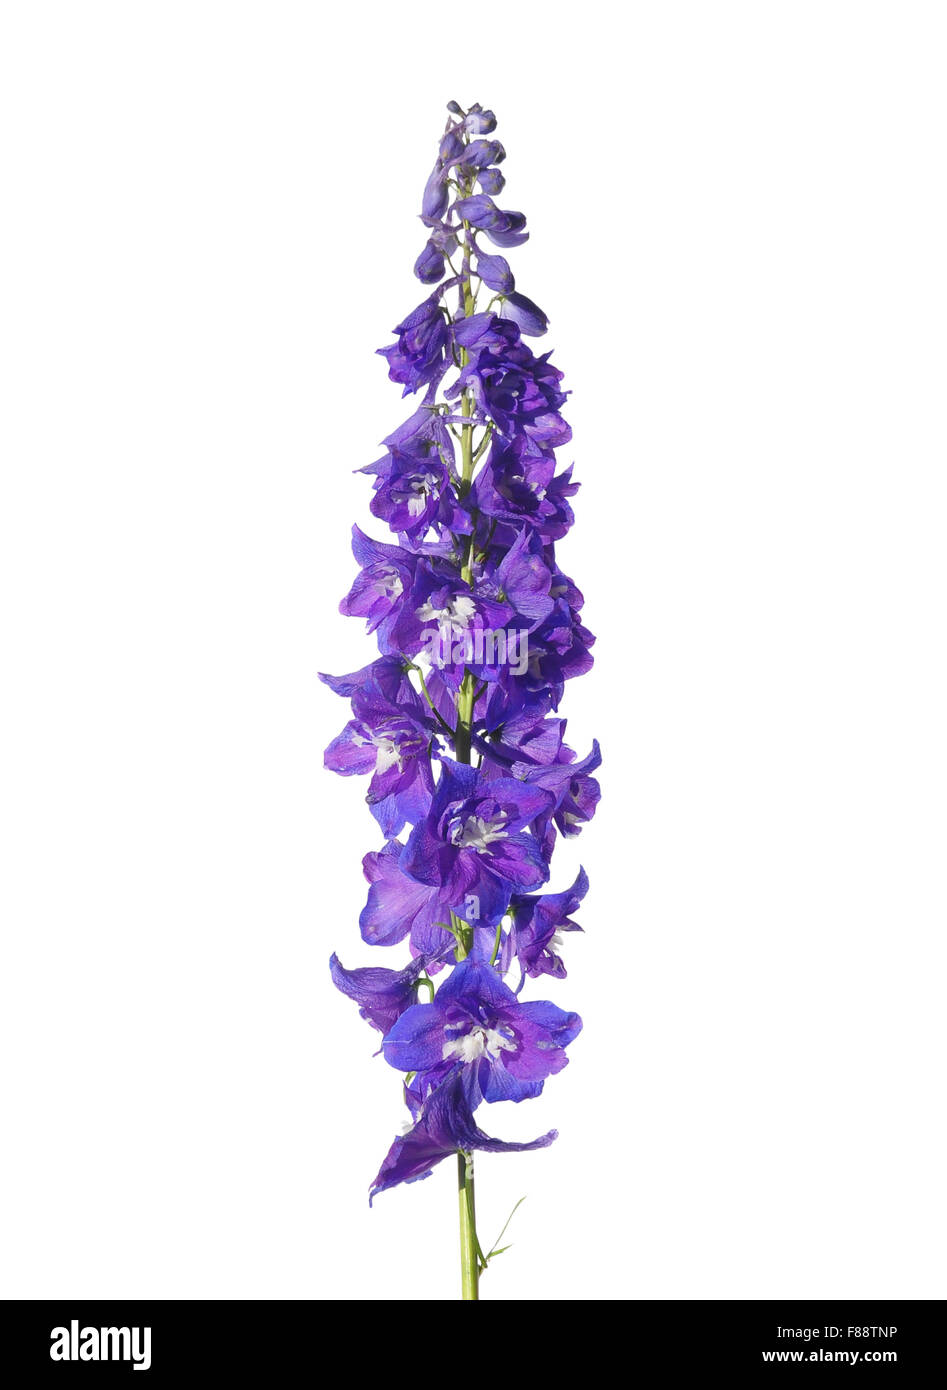 Delphinium flower Stock Photo